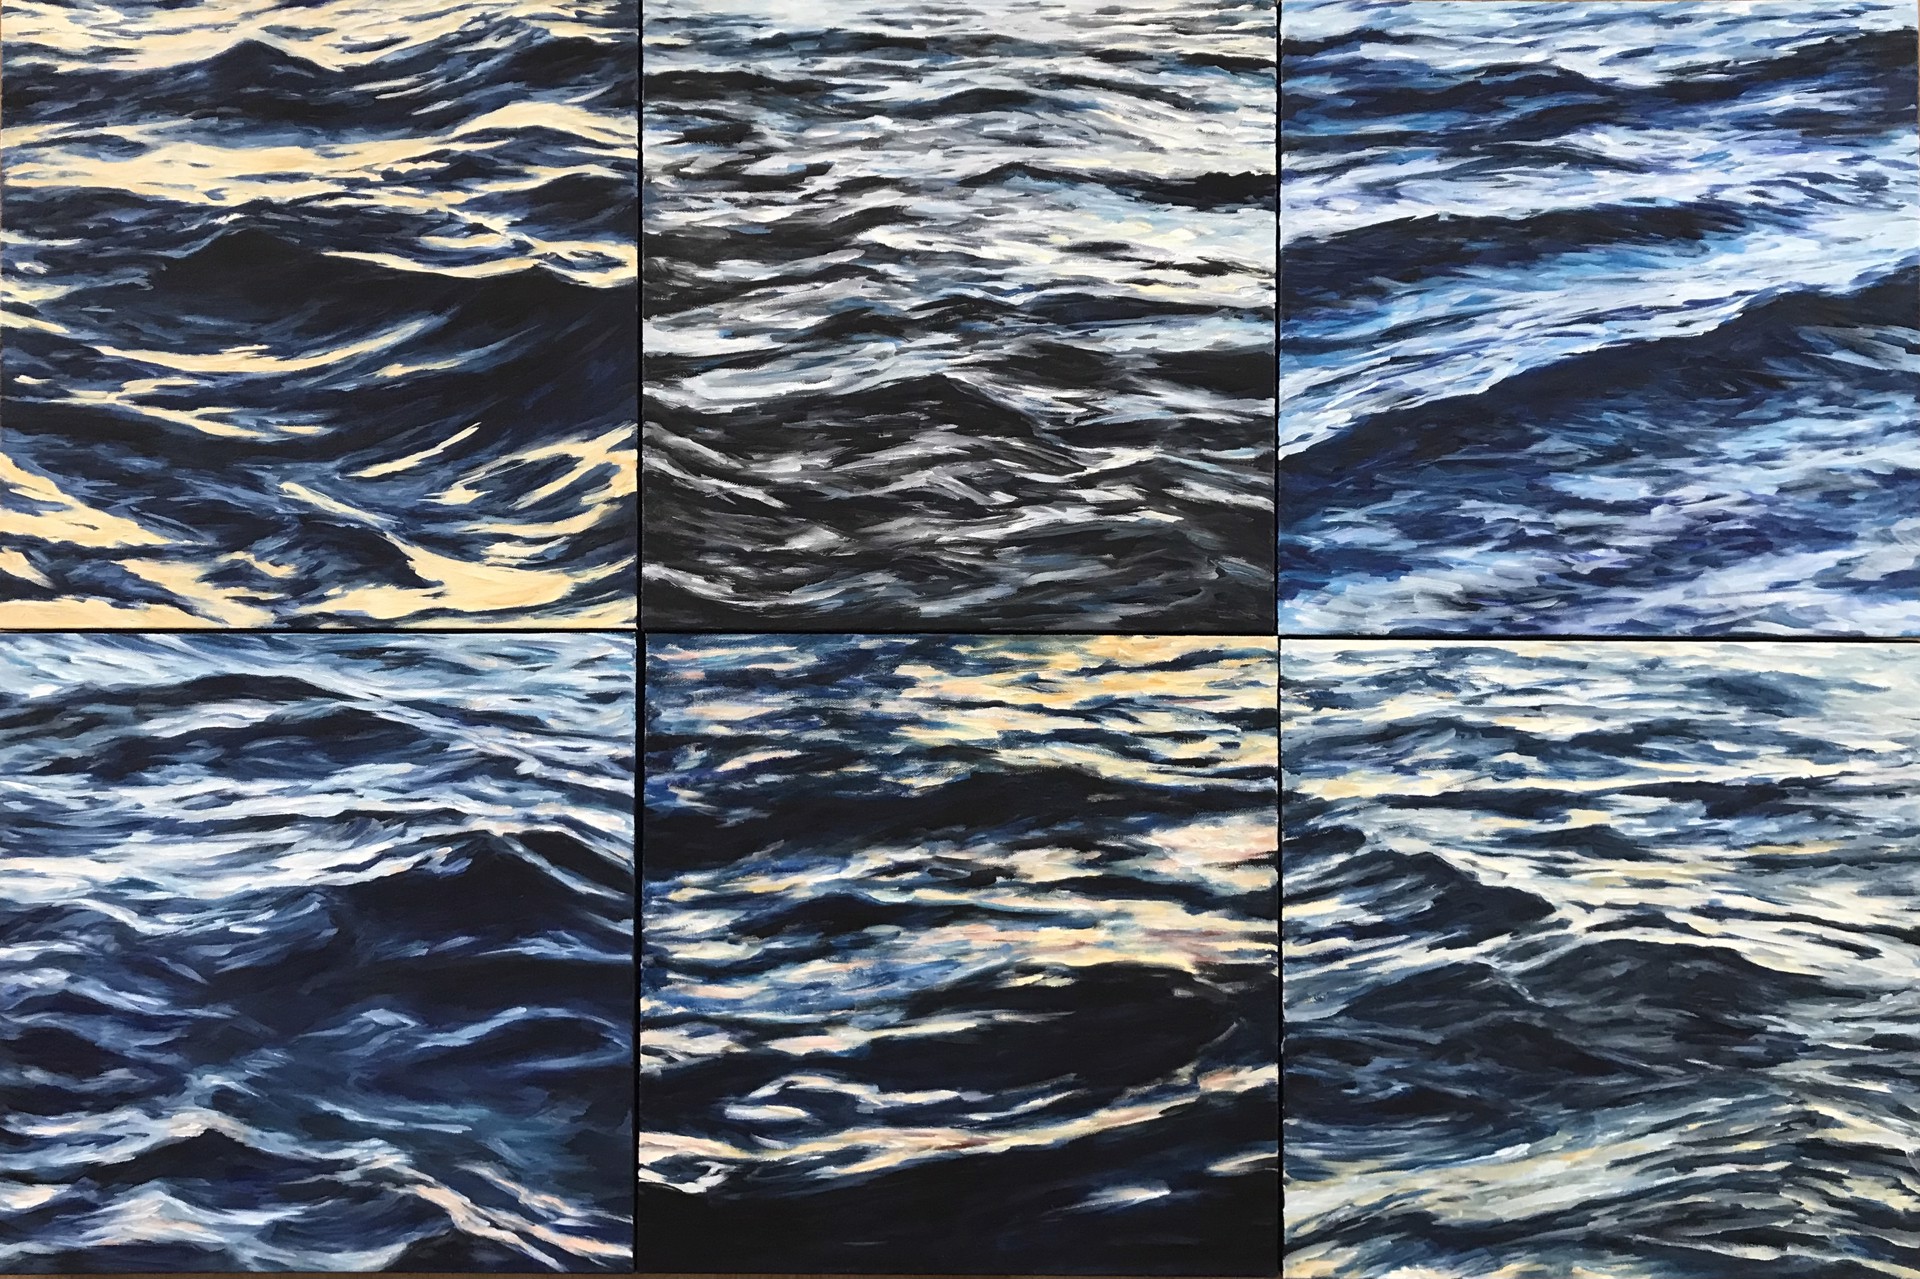 Lahaina Waves 4 by Valerie Eickmeier